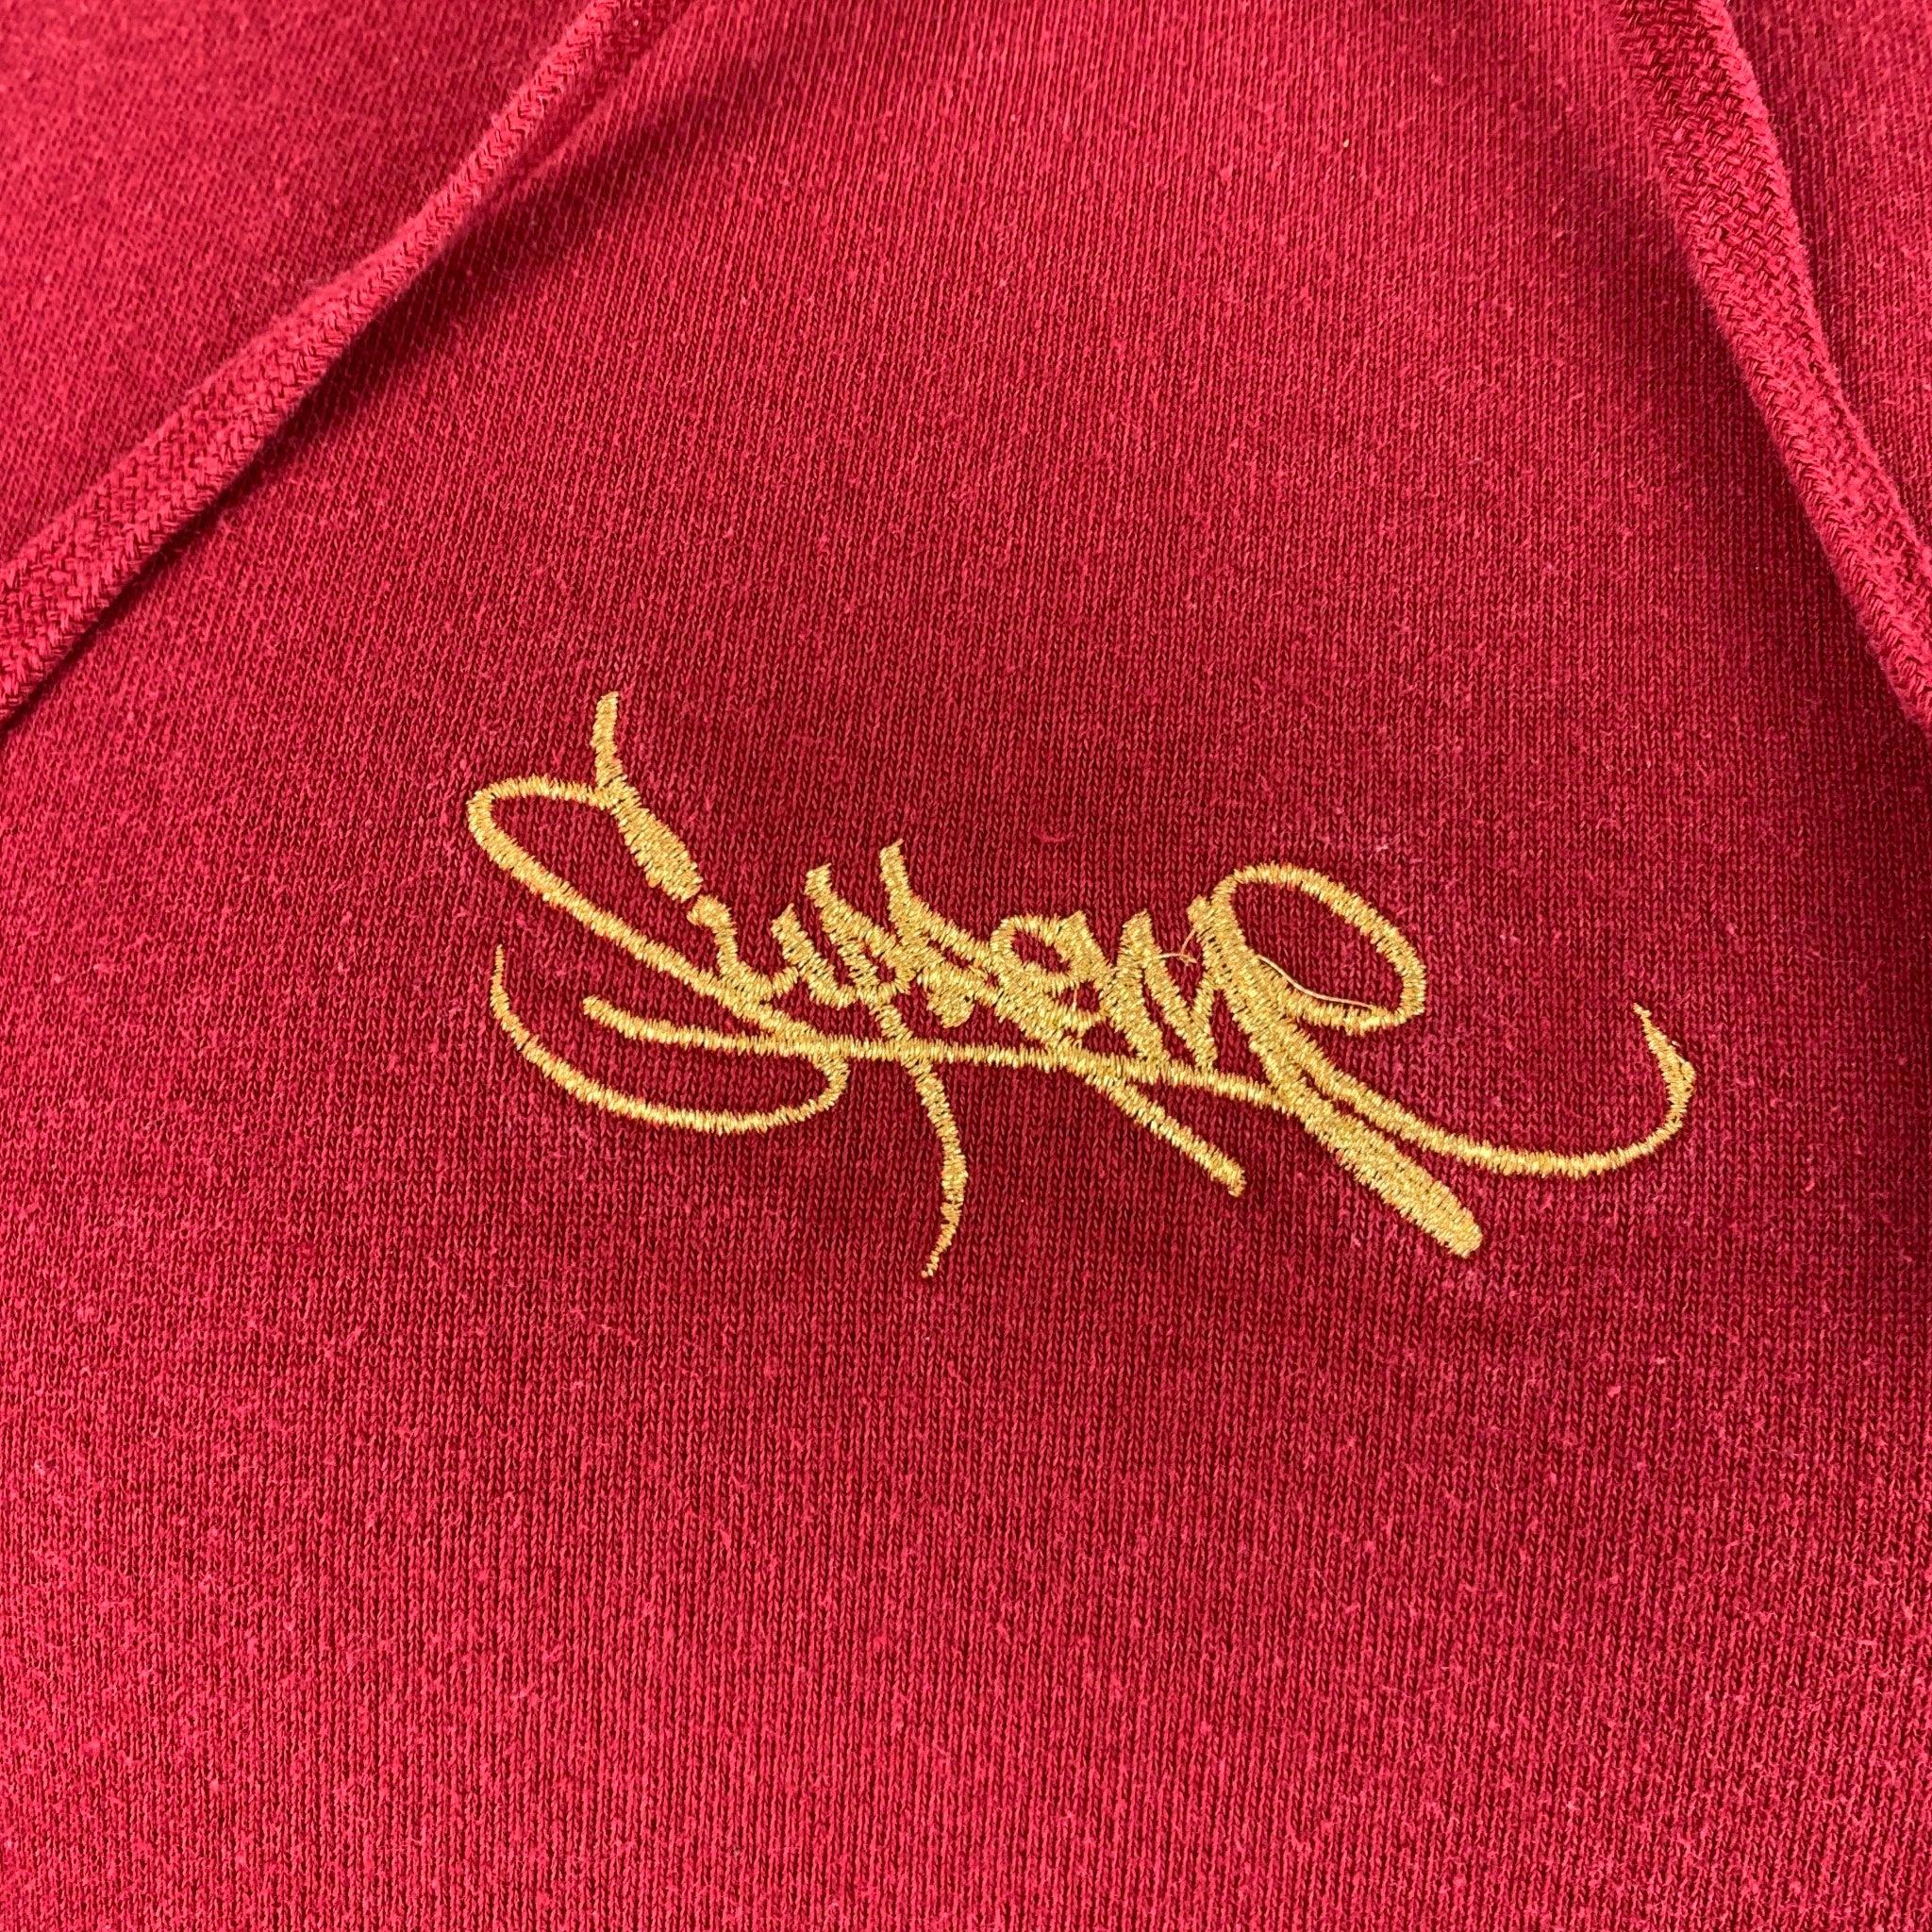 Sweat-shirt SUPREME
dans un
en tricot de coton bordeaux avec capuche, broderie Supreme dorée et poches kangourou. Fabriqué au Canada. Très bon état. Signes d'usure modérés. 

Marqué :   M 

Mesures : 
 
Épaule : 19 pouces Poitrine : 45 pouces